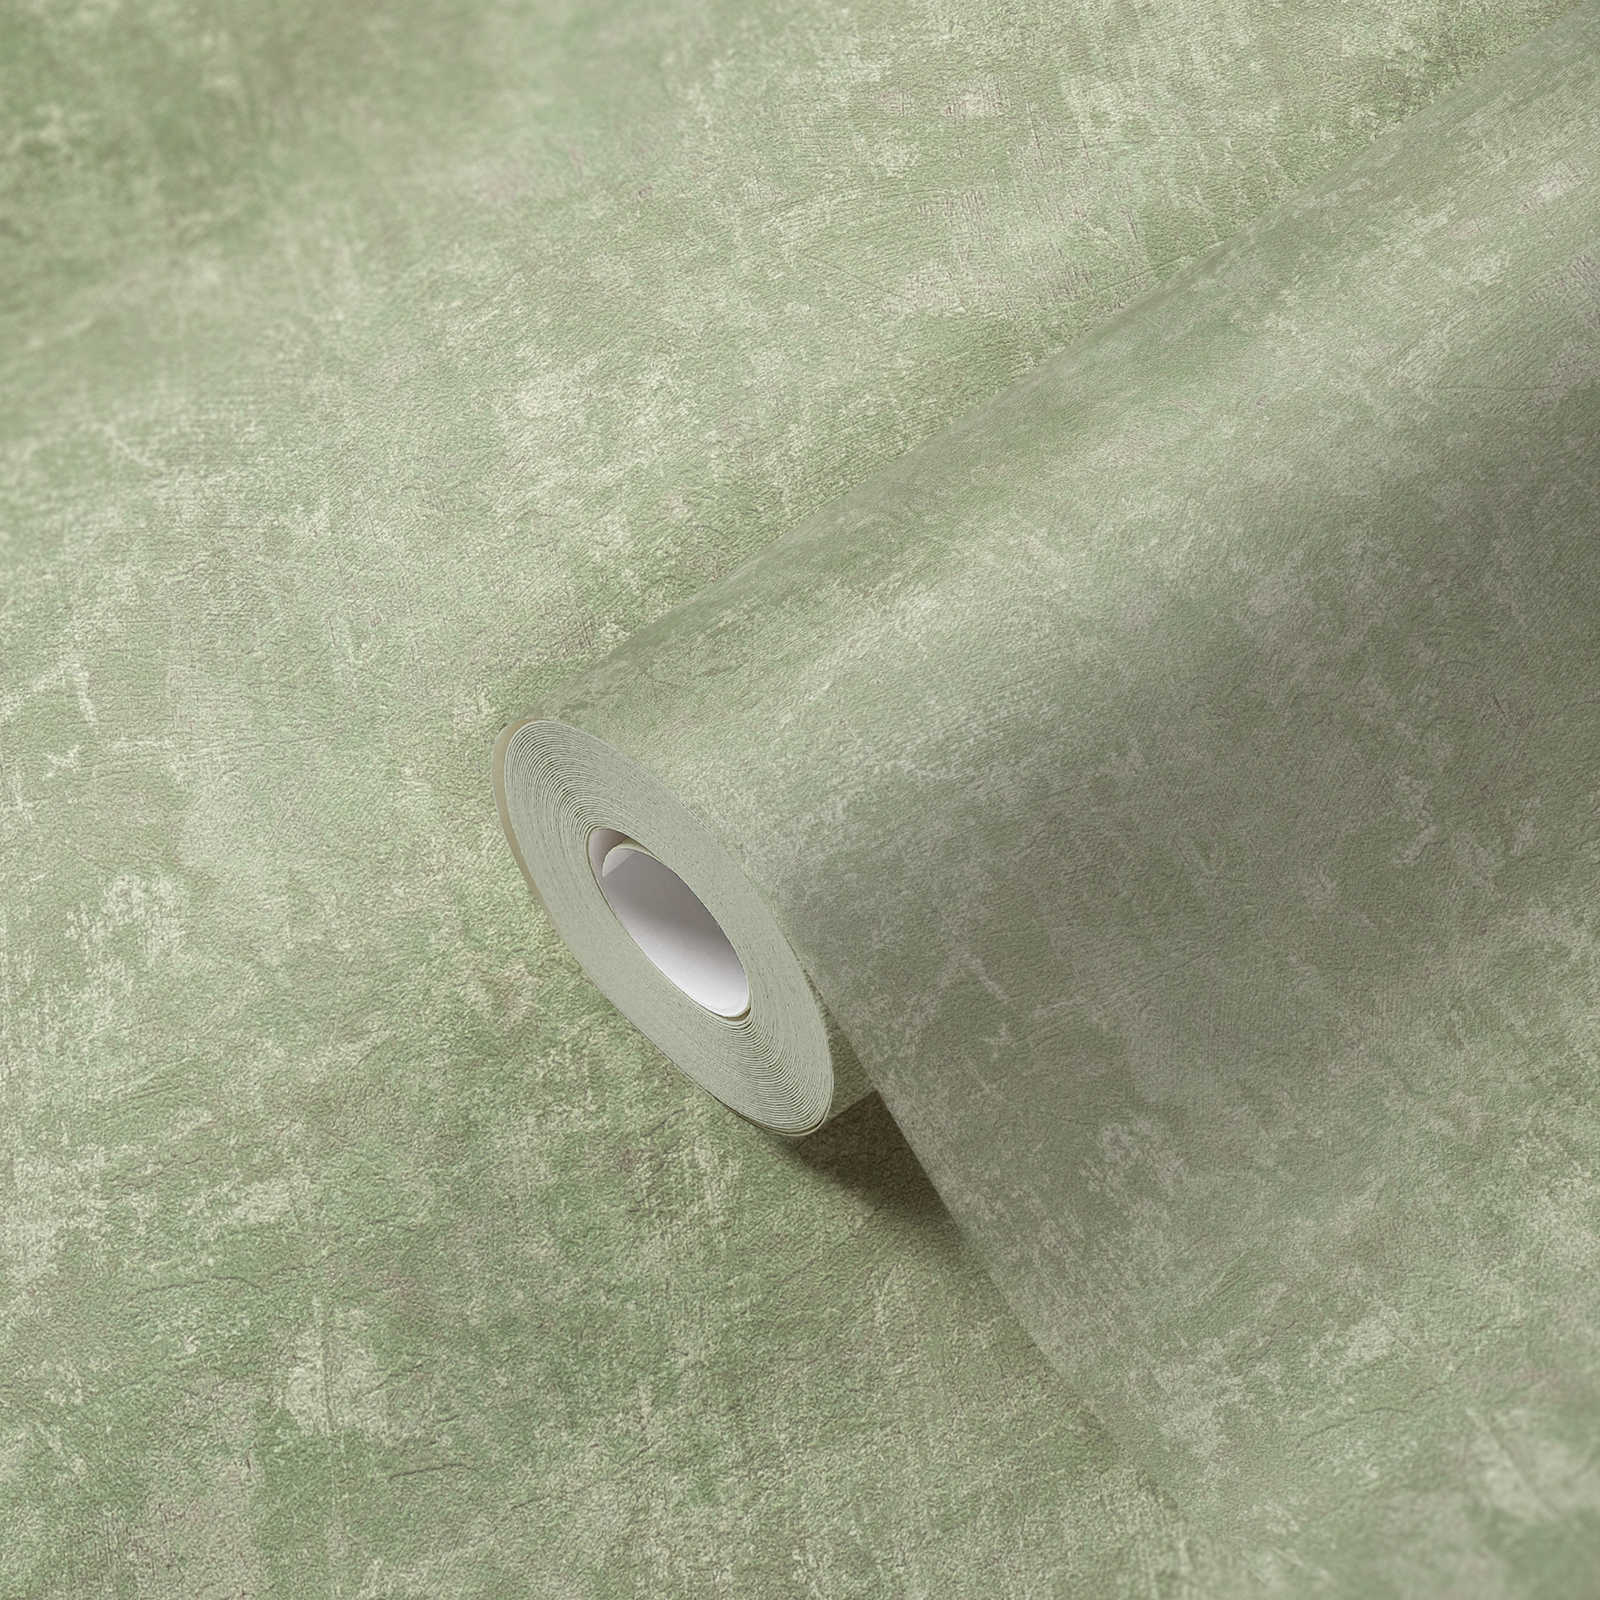             Vliesbehang met structuurpatroon PVC-vrij - groen
        